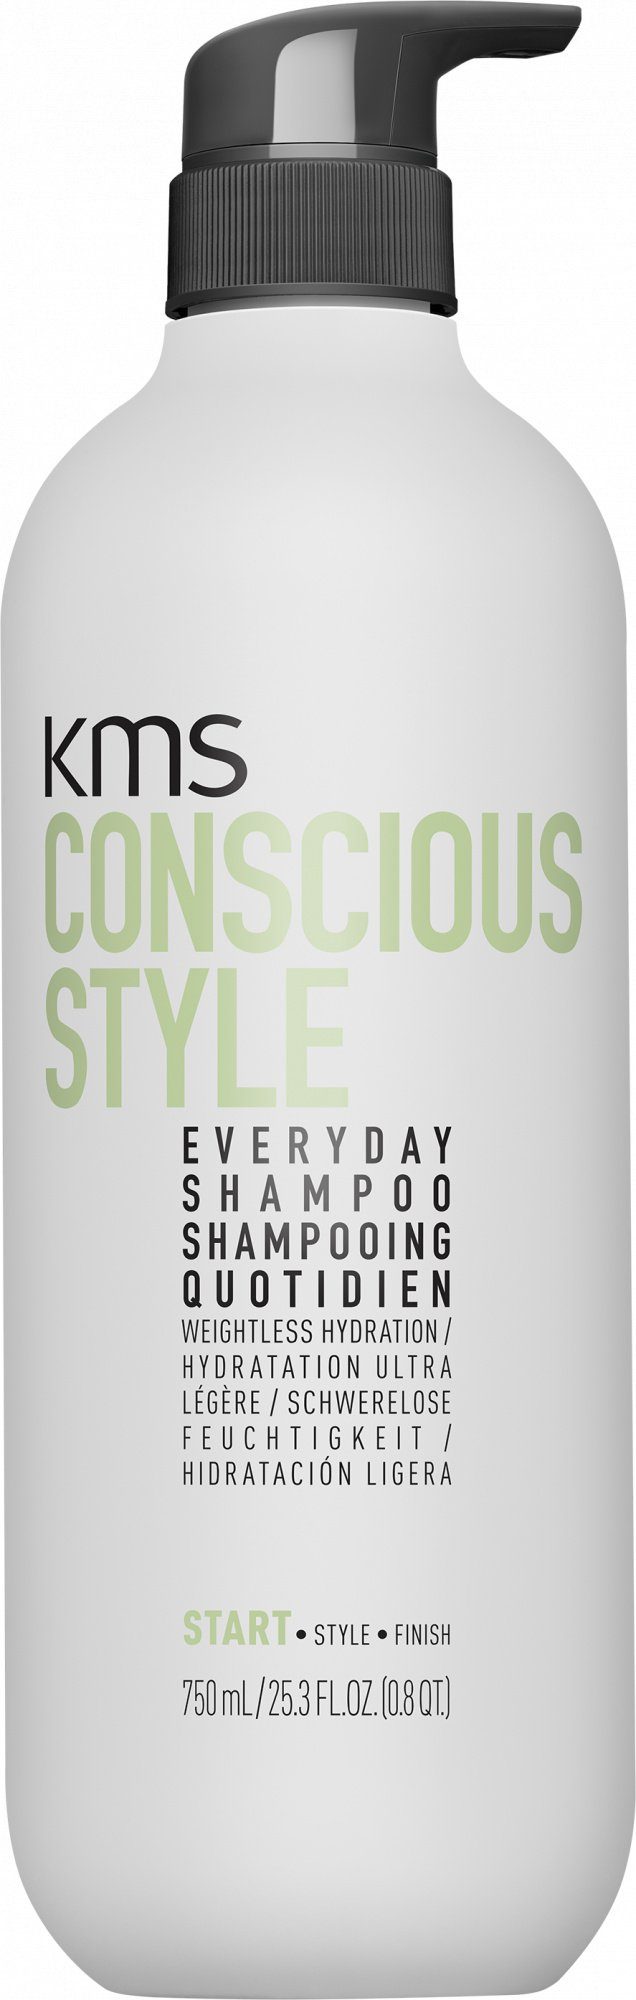 KMS Haarshampoo Conscious Style Everyday Shampoo, für die tägliche Reinigung